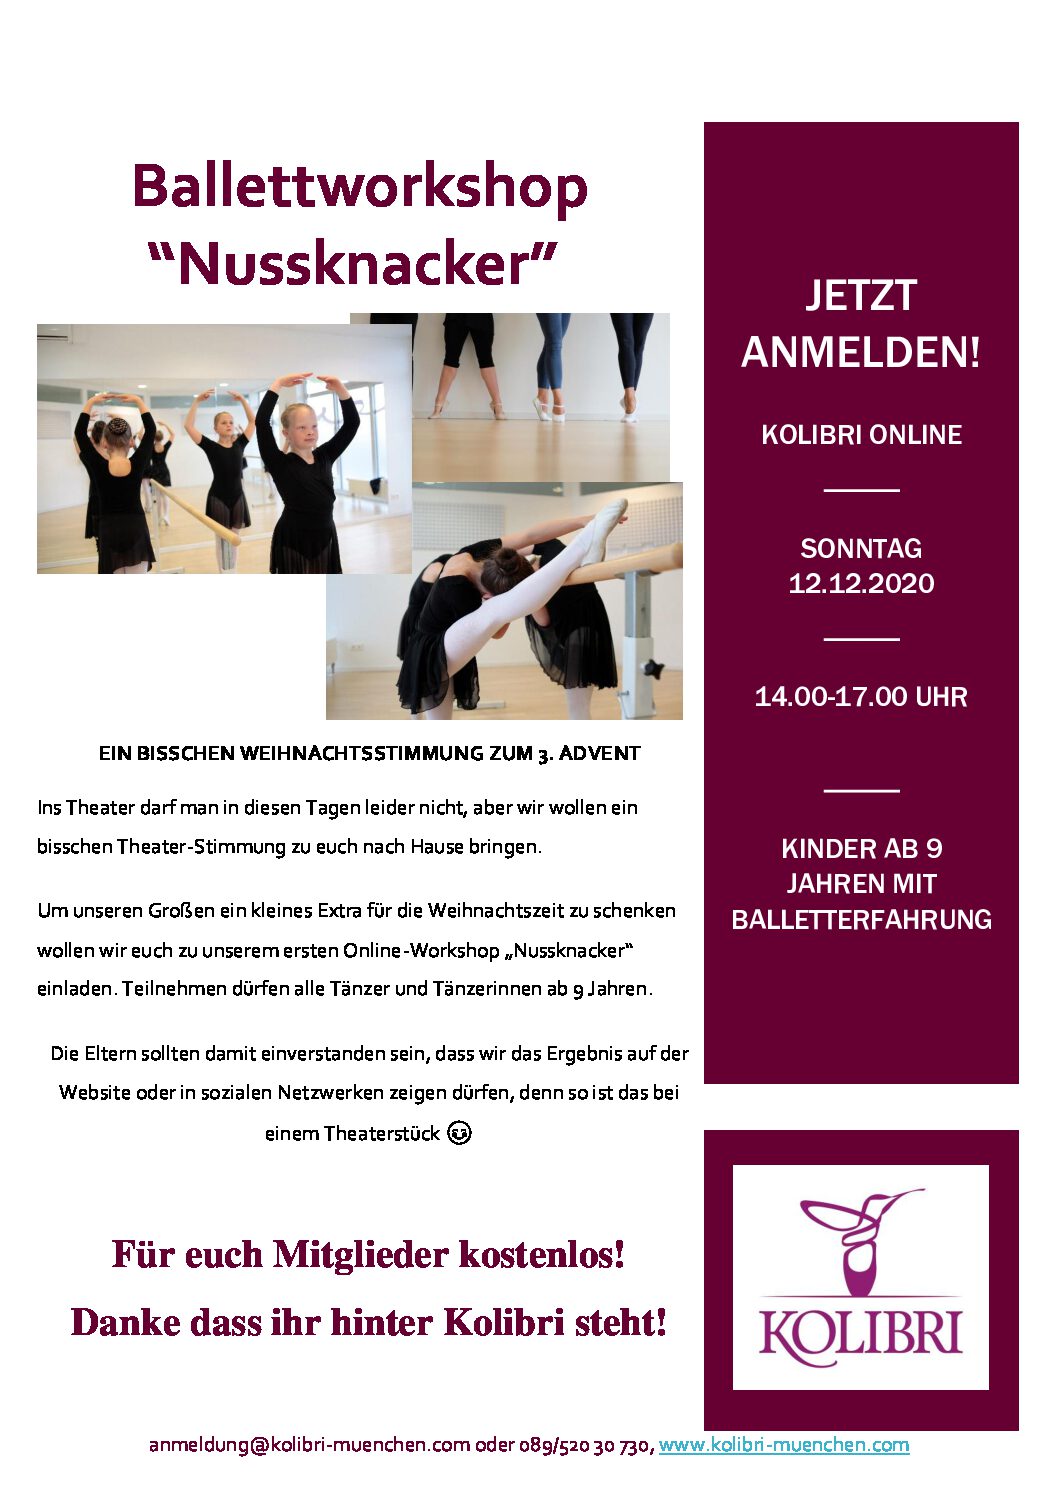 Ballettworkshop “Nussknacker”